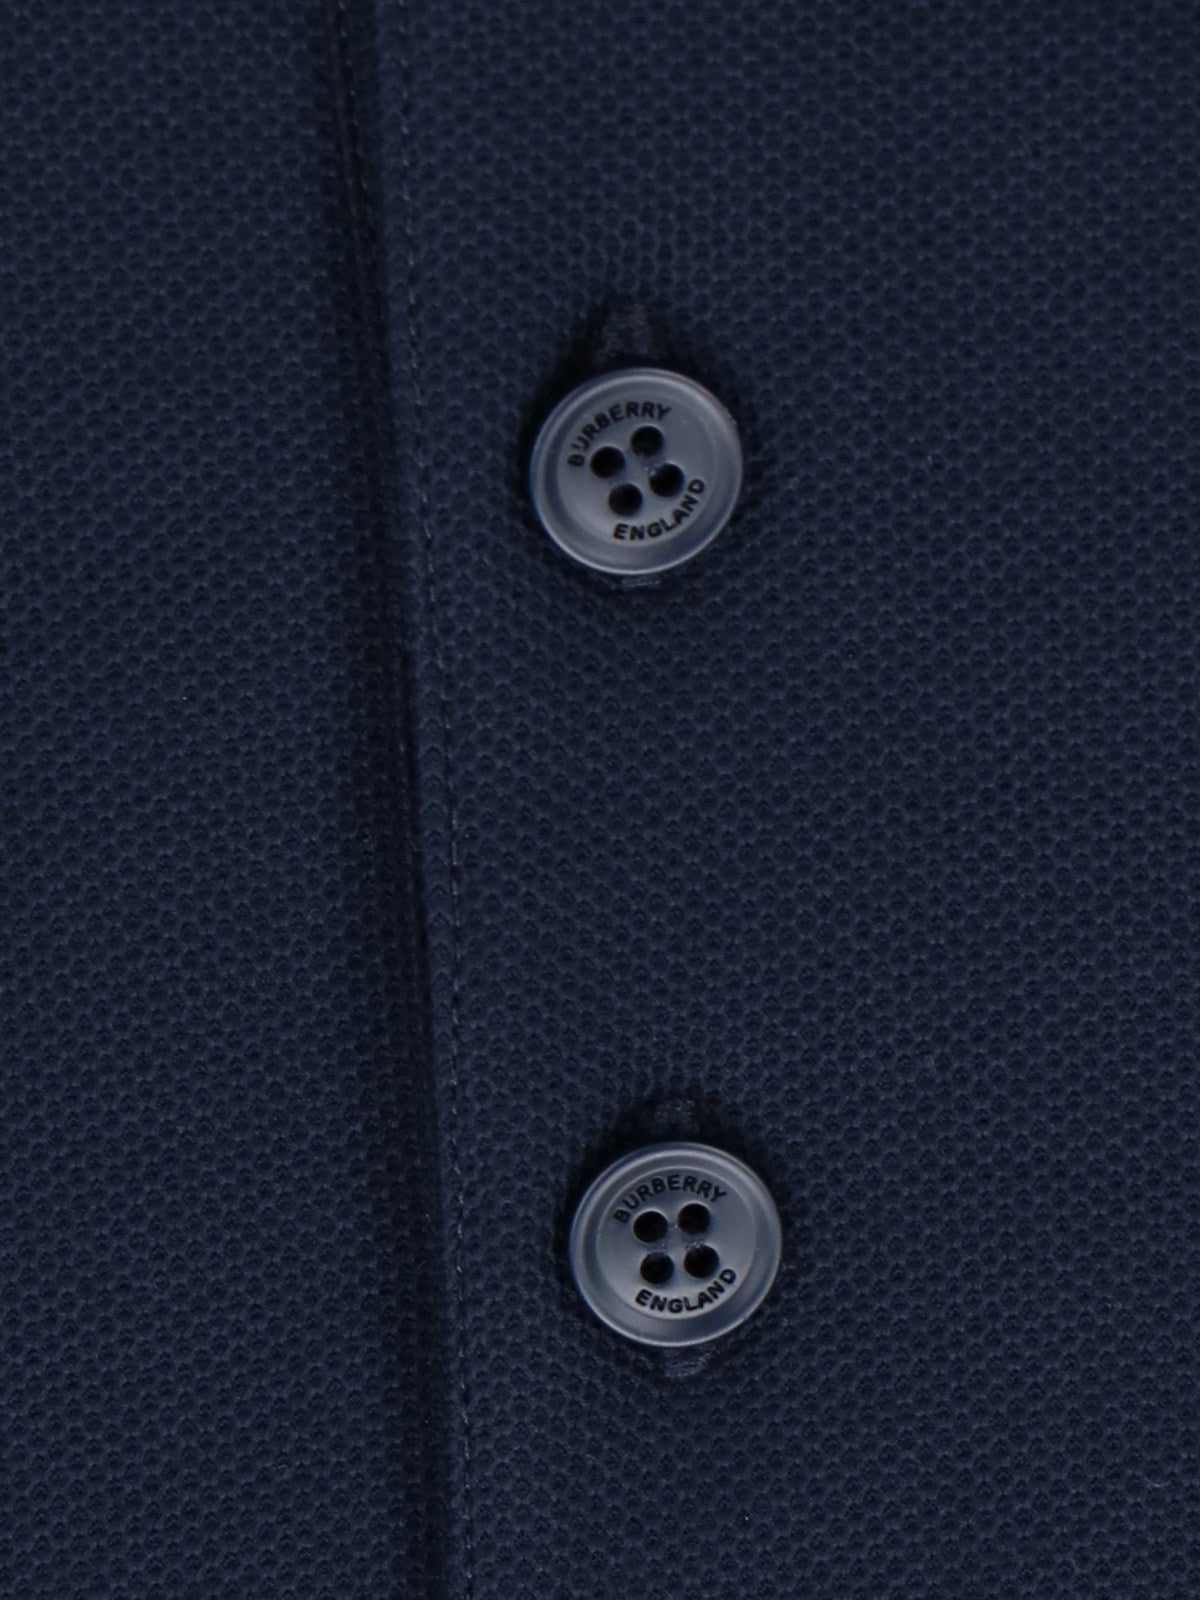 Burberry Polo dettaglio righe-Polo-Burberry-Polo dettaglio righe Burberry, in cotone blu, colletto classico dettaglio righe beige e rosse, chiusura bottoni, ricamo logo nero petto, maniche corte, orlo dritto.-Dresso